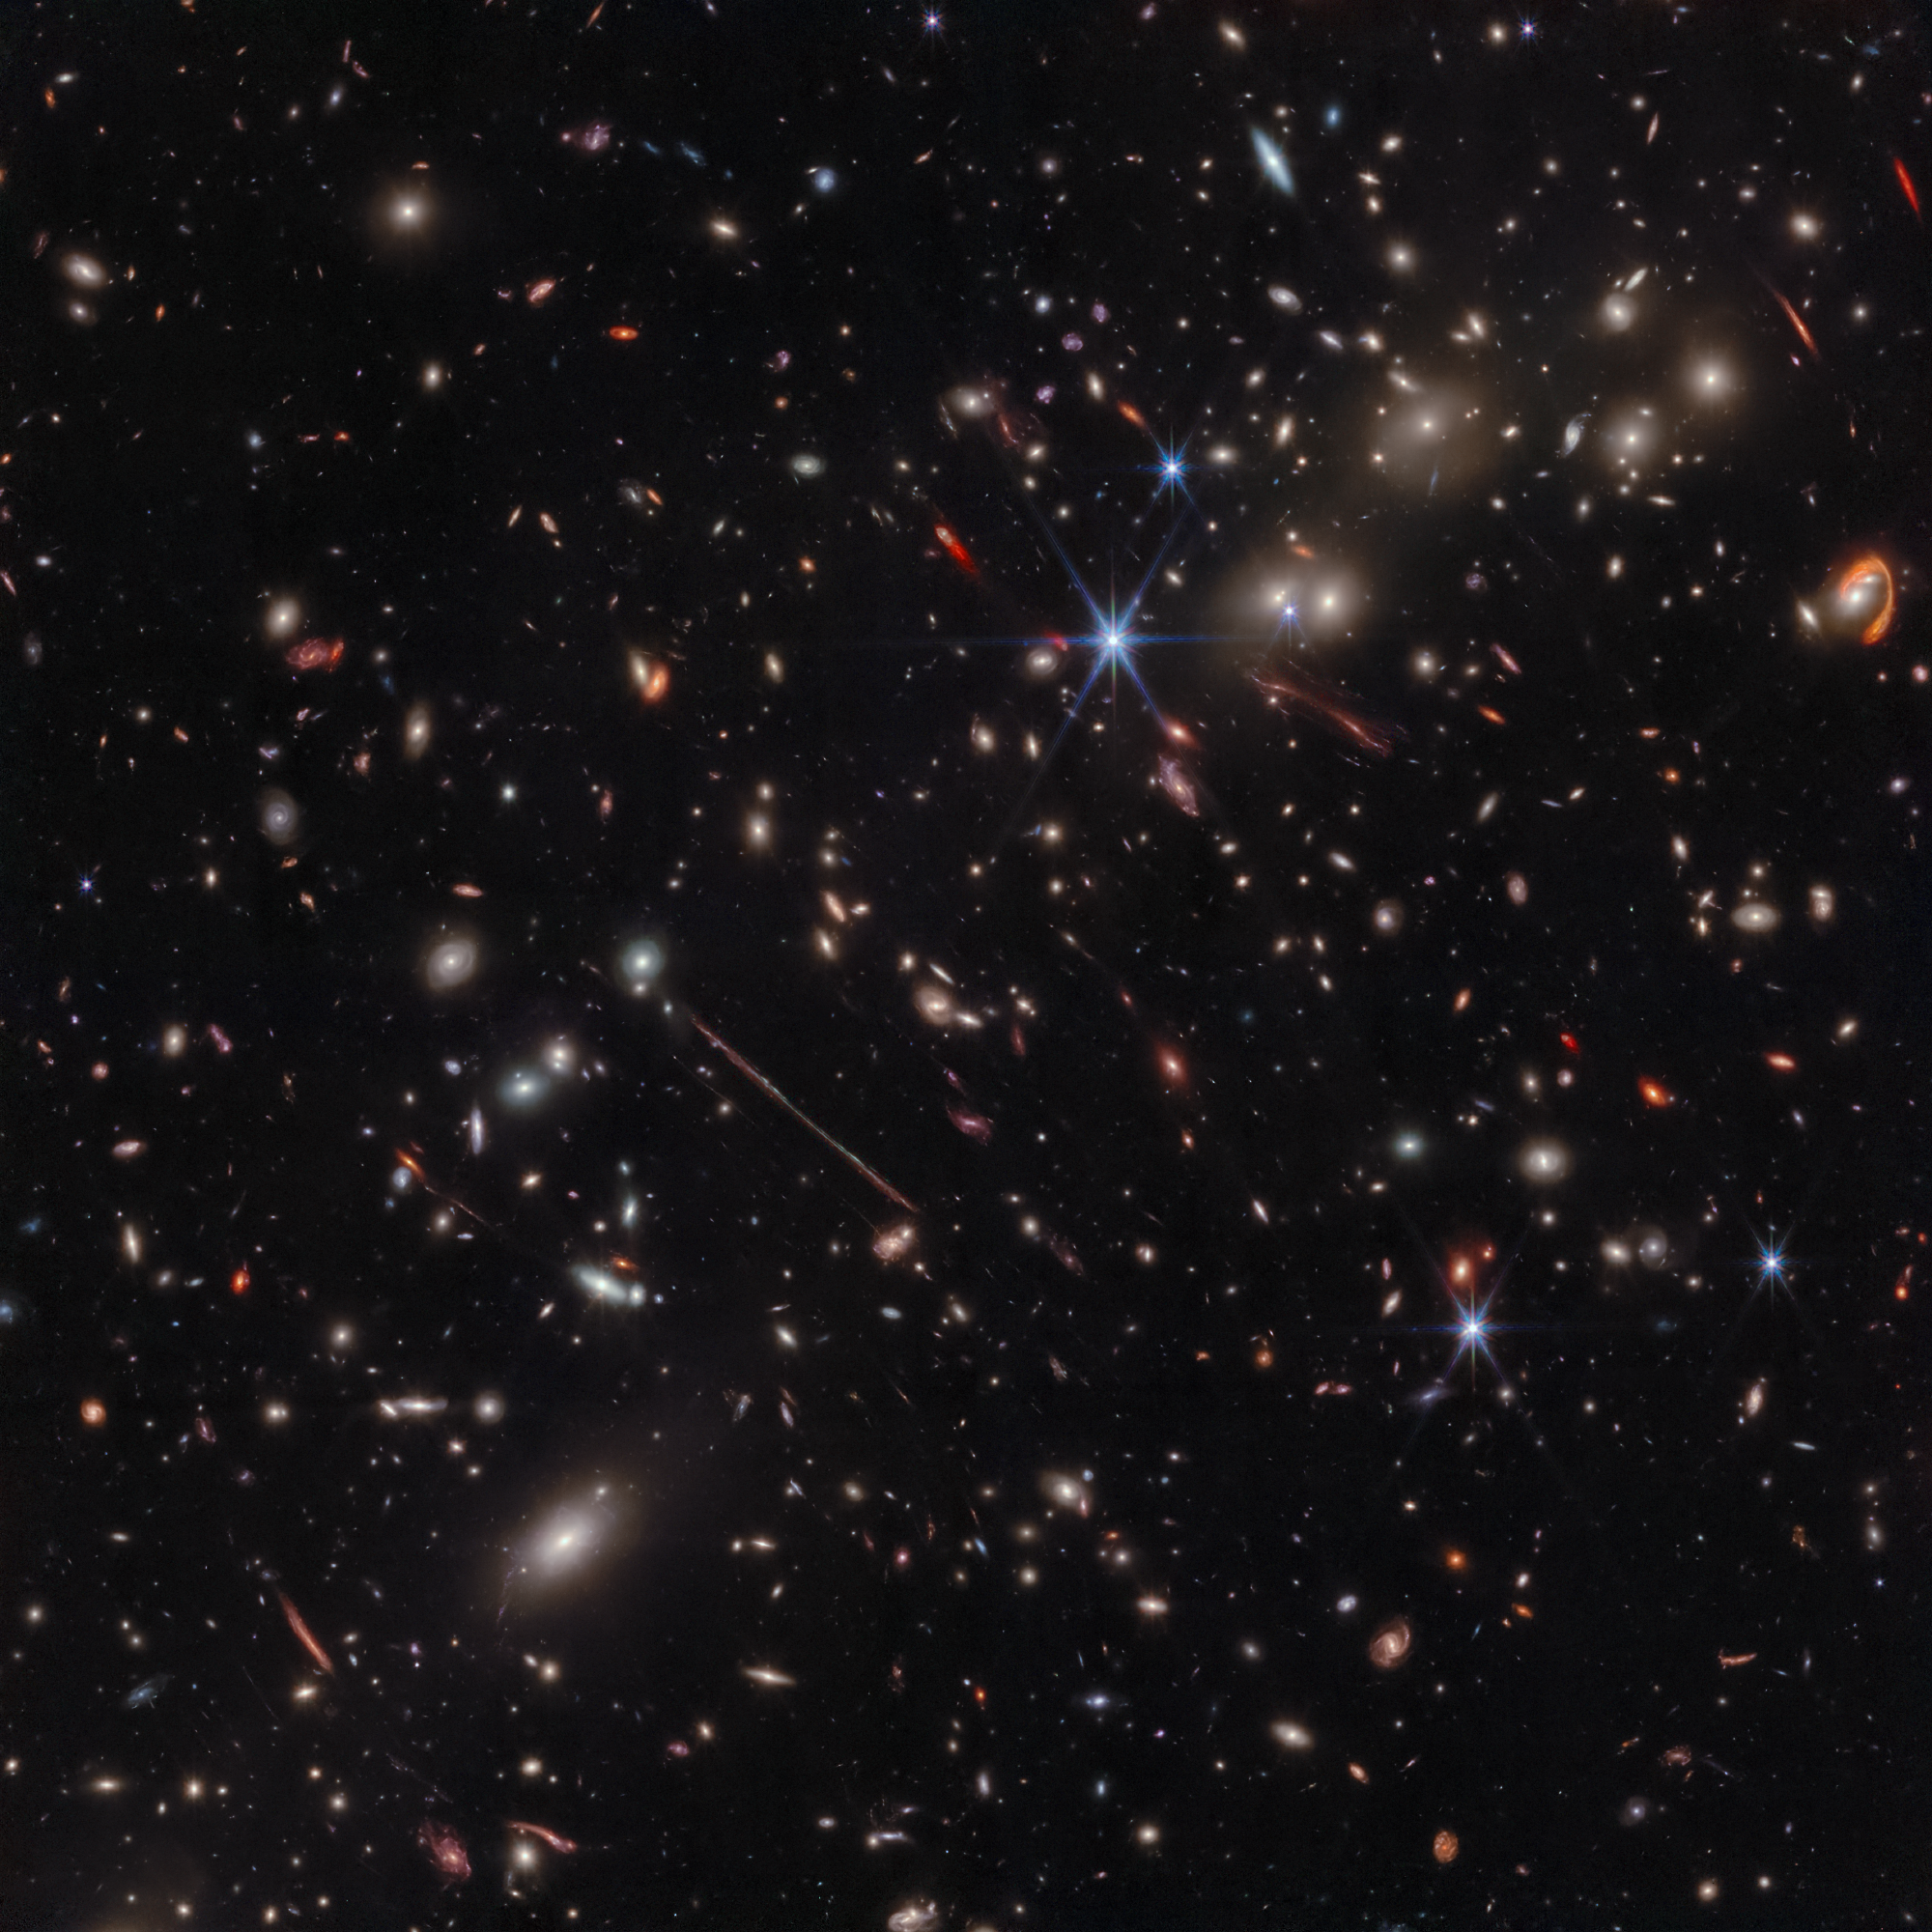 Na ilustracji: Zdjęcie w podczerwieni gromady galaktyk El Gordo („Grubas”) zawierającej setki galaktyk, które zostało zrobione przez Teleskop Webba. El Gordo działa jak soczewka grawitacyjna zniekształcająca i wzmacniająca światło odległych galaktyk tła. Najciekawsze z nich to zniekształcona do kreski galaktyka tła La Flaca („Chuda”) widoczna nieco na lewo od środka zdjęcia oraz El Anzuelo („Haczyk”) widoczna w pobliżu górnego prawego narożnika zdjęcia.  Źródło: NASA, ESA, CSA